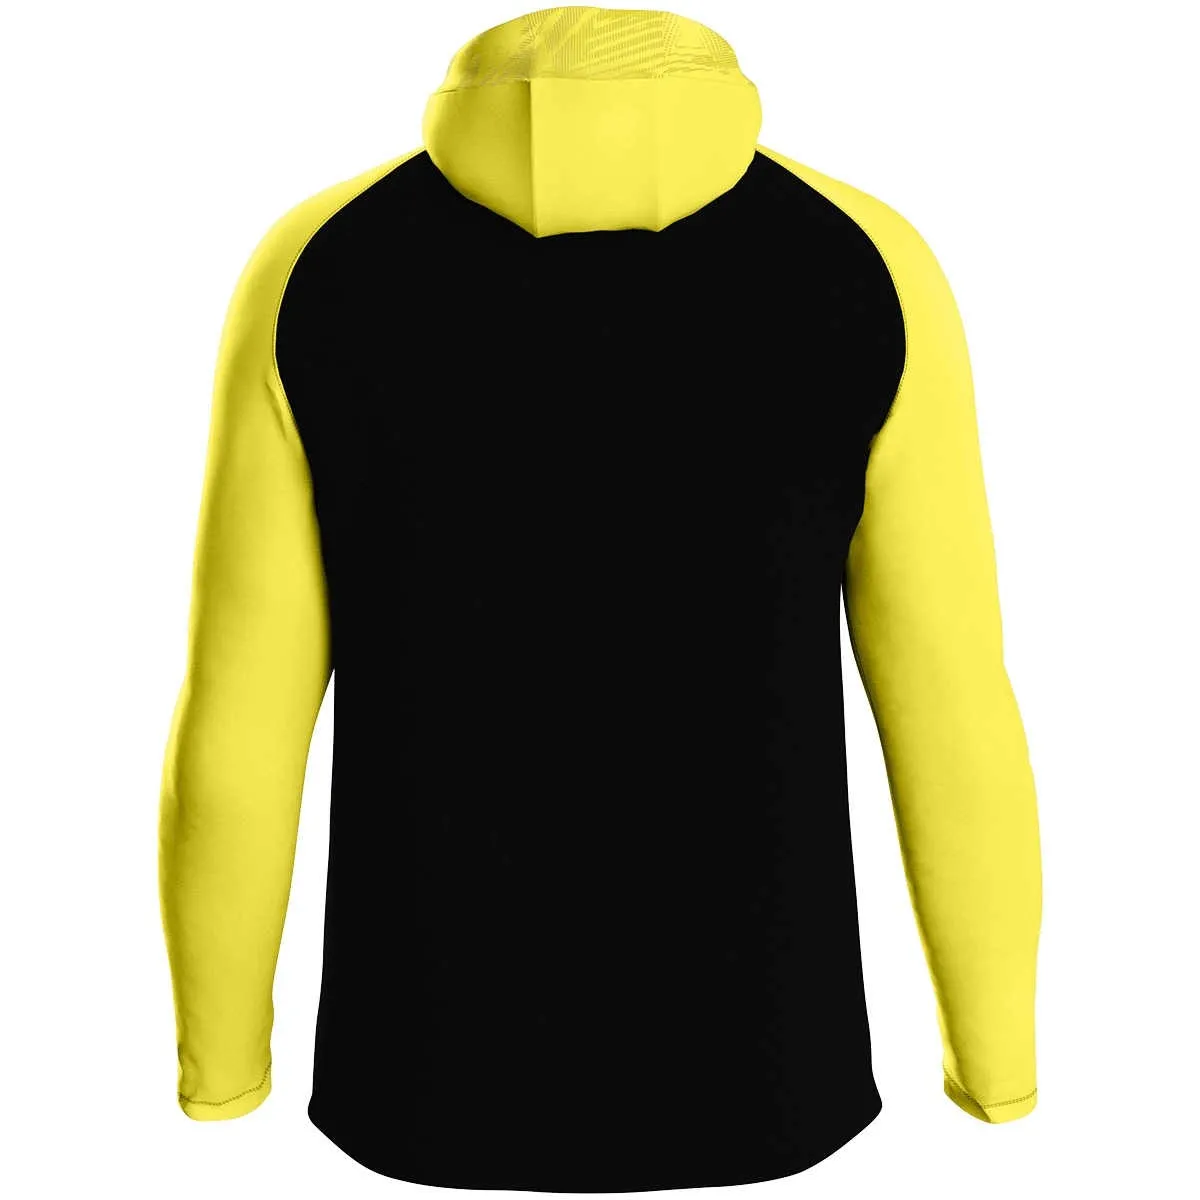 JAKO hooded jacket Iconic black/soft yellow